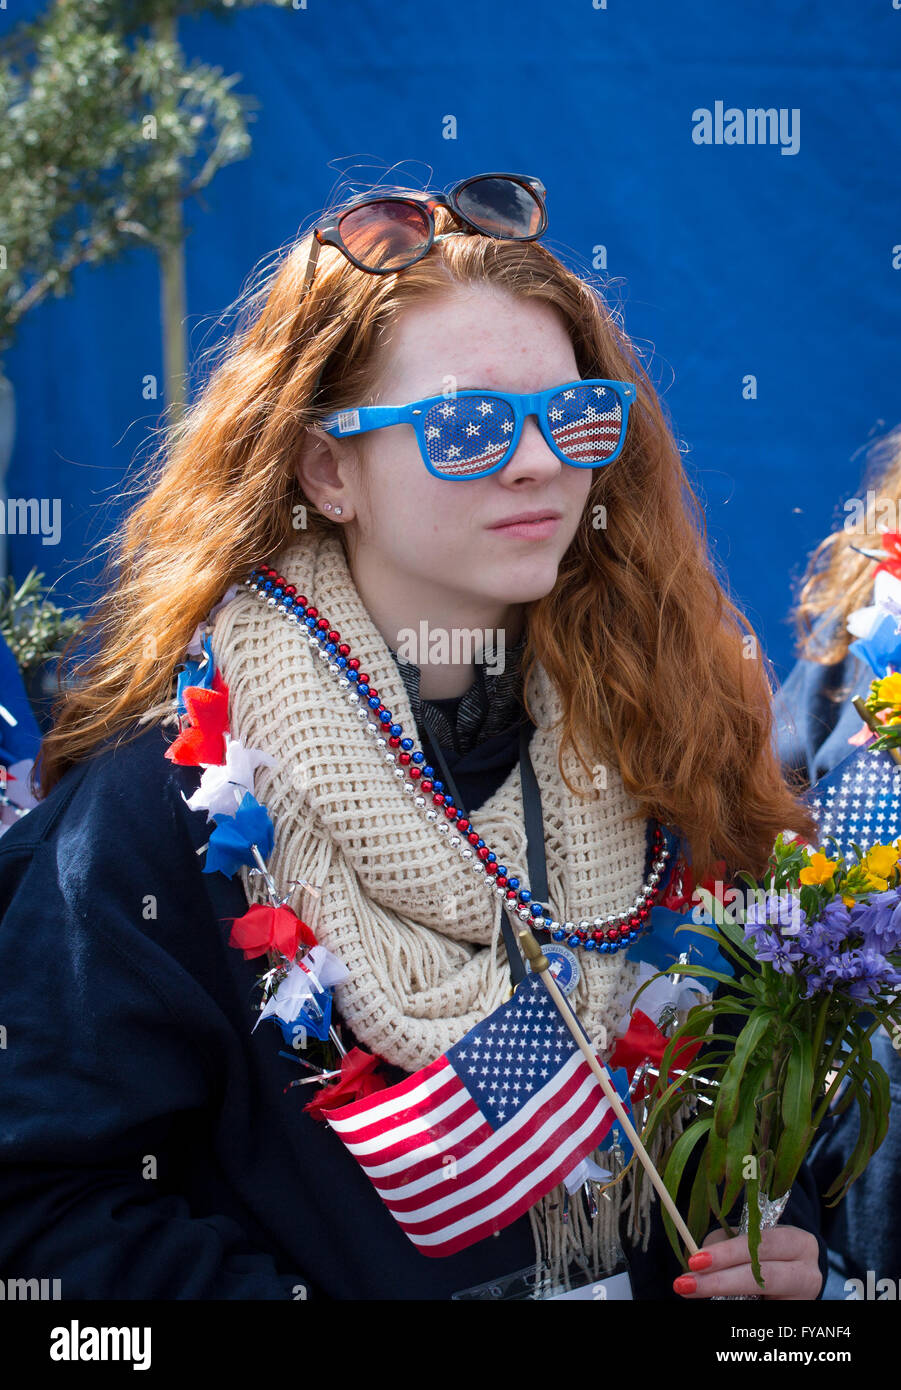 Une jeune fille américaine vêtu d'attirail stars and stripes Banque D'Images